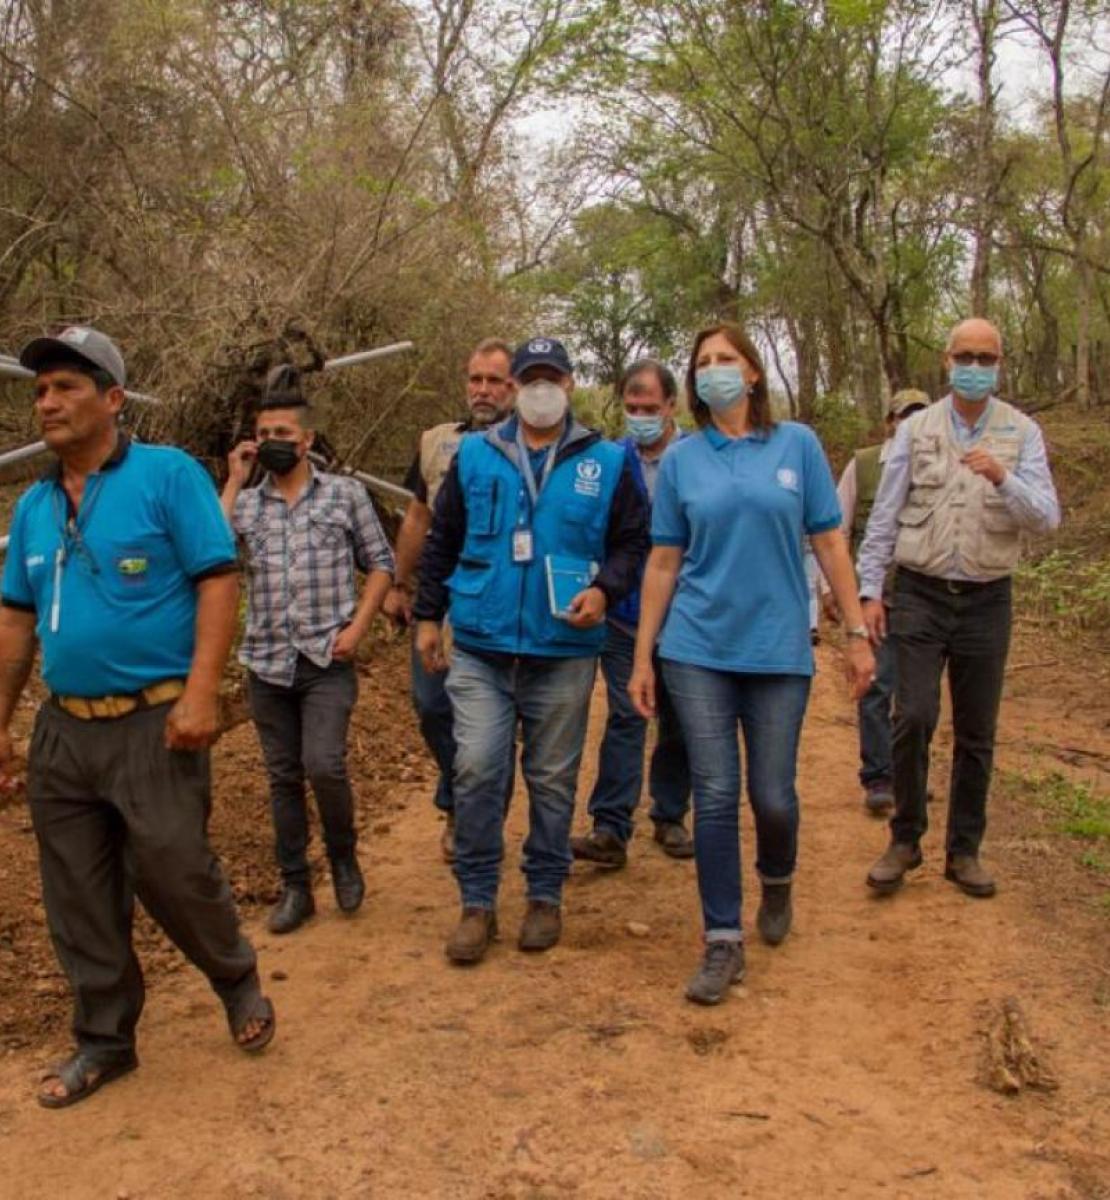 Un grupo de personas con mascarillas caminan juntas por una zona boscosa.